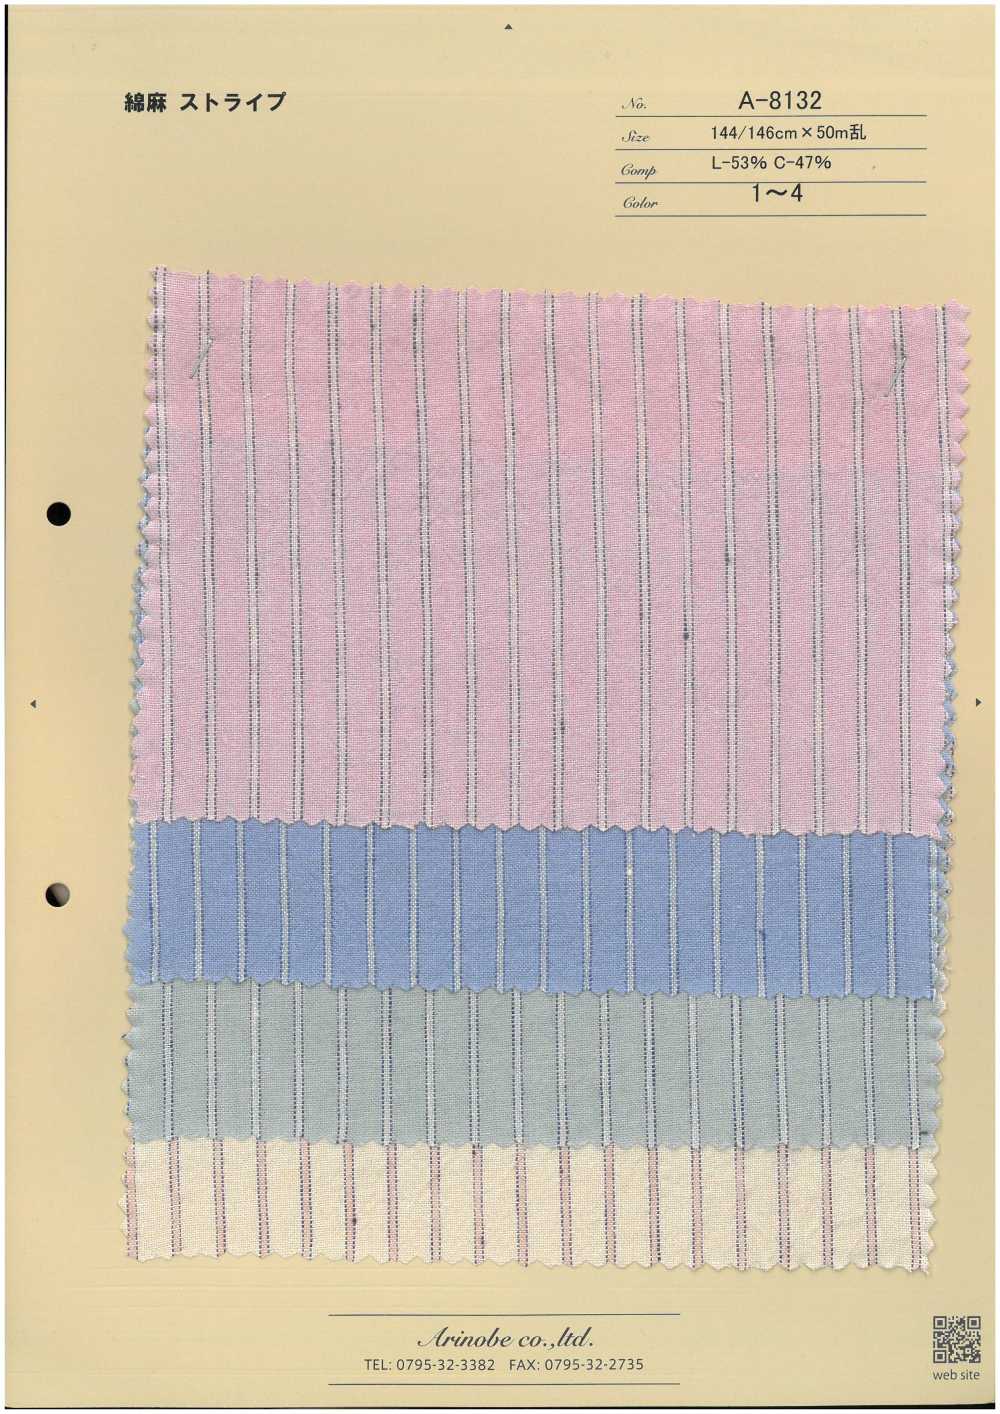 A-8132 Leinenstreifen[Textilgewebe] ARINOBE CO., LTD.